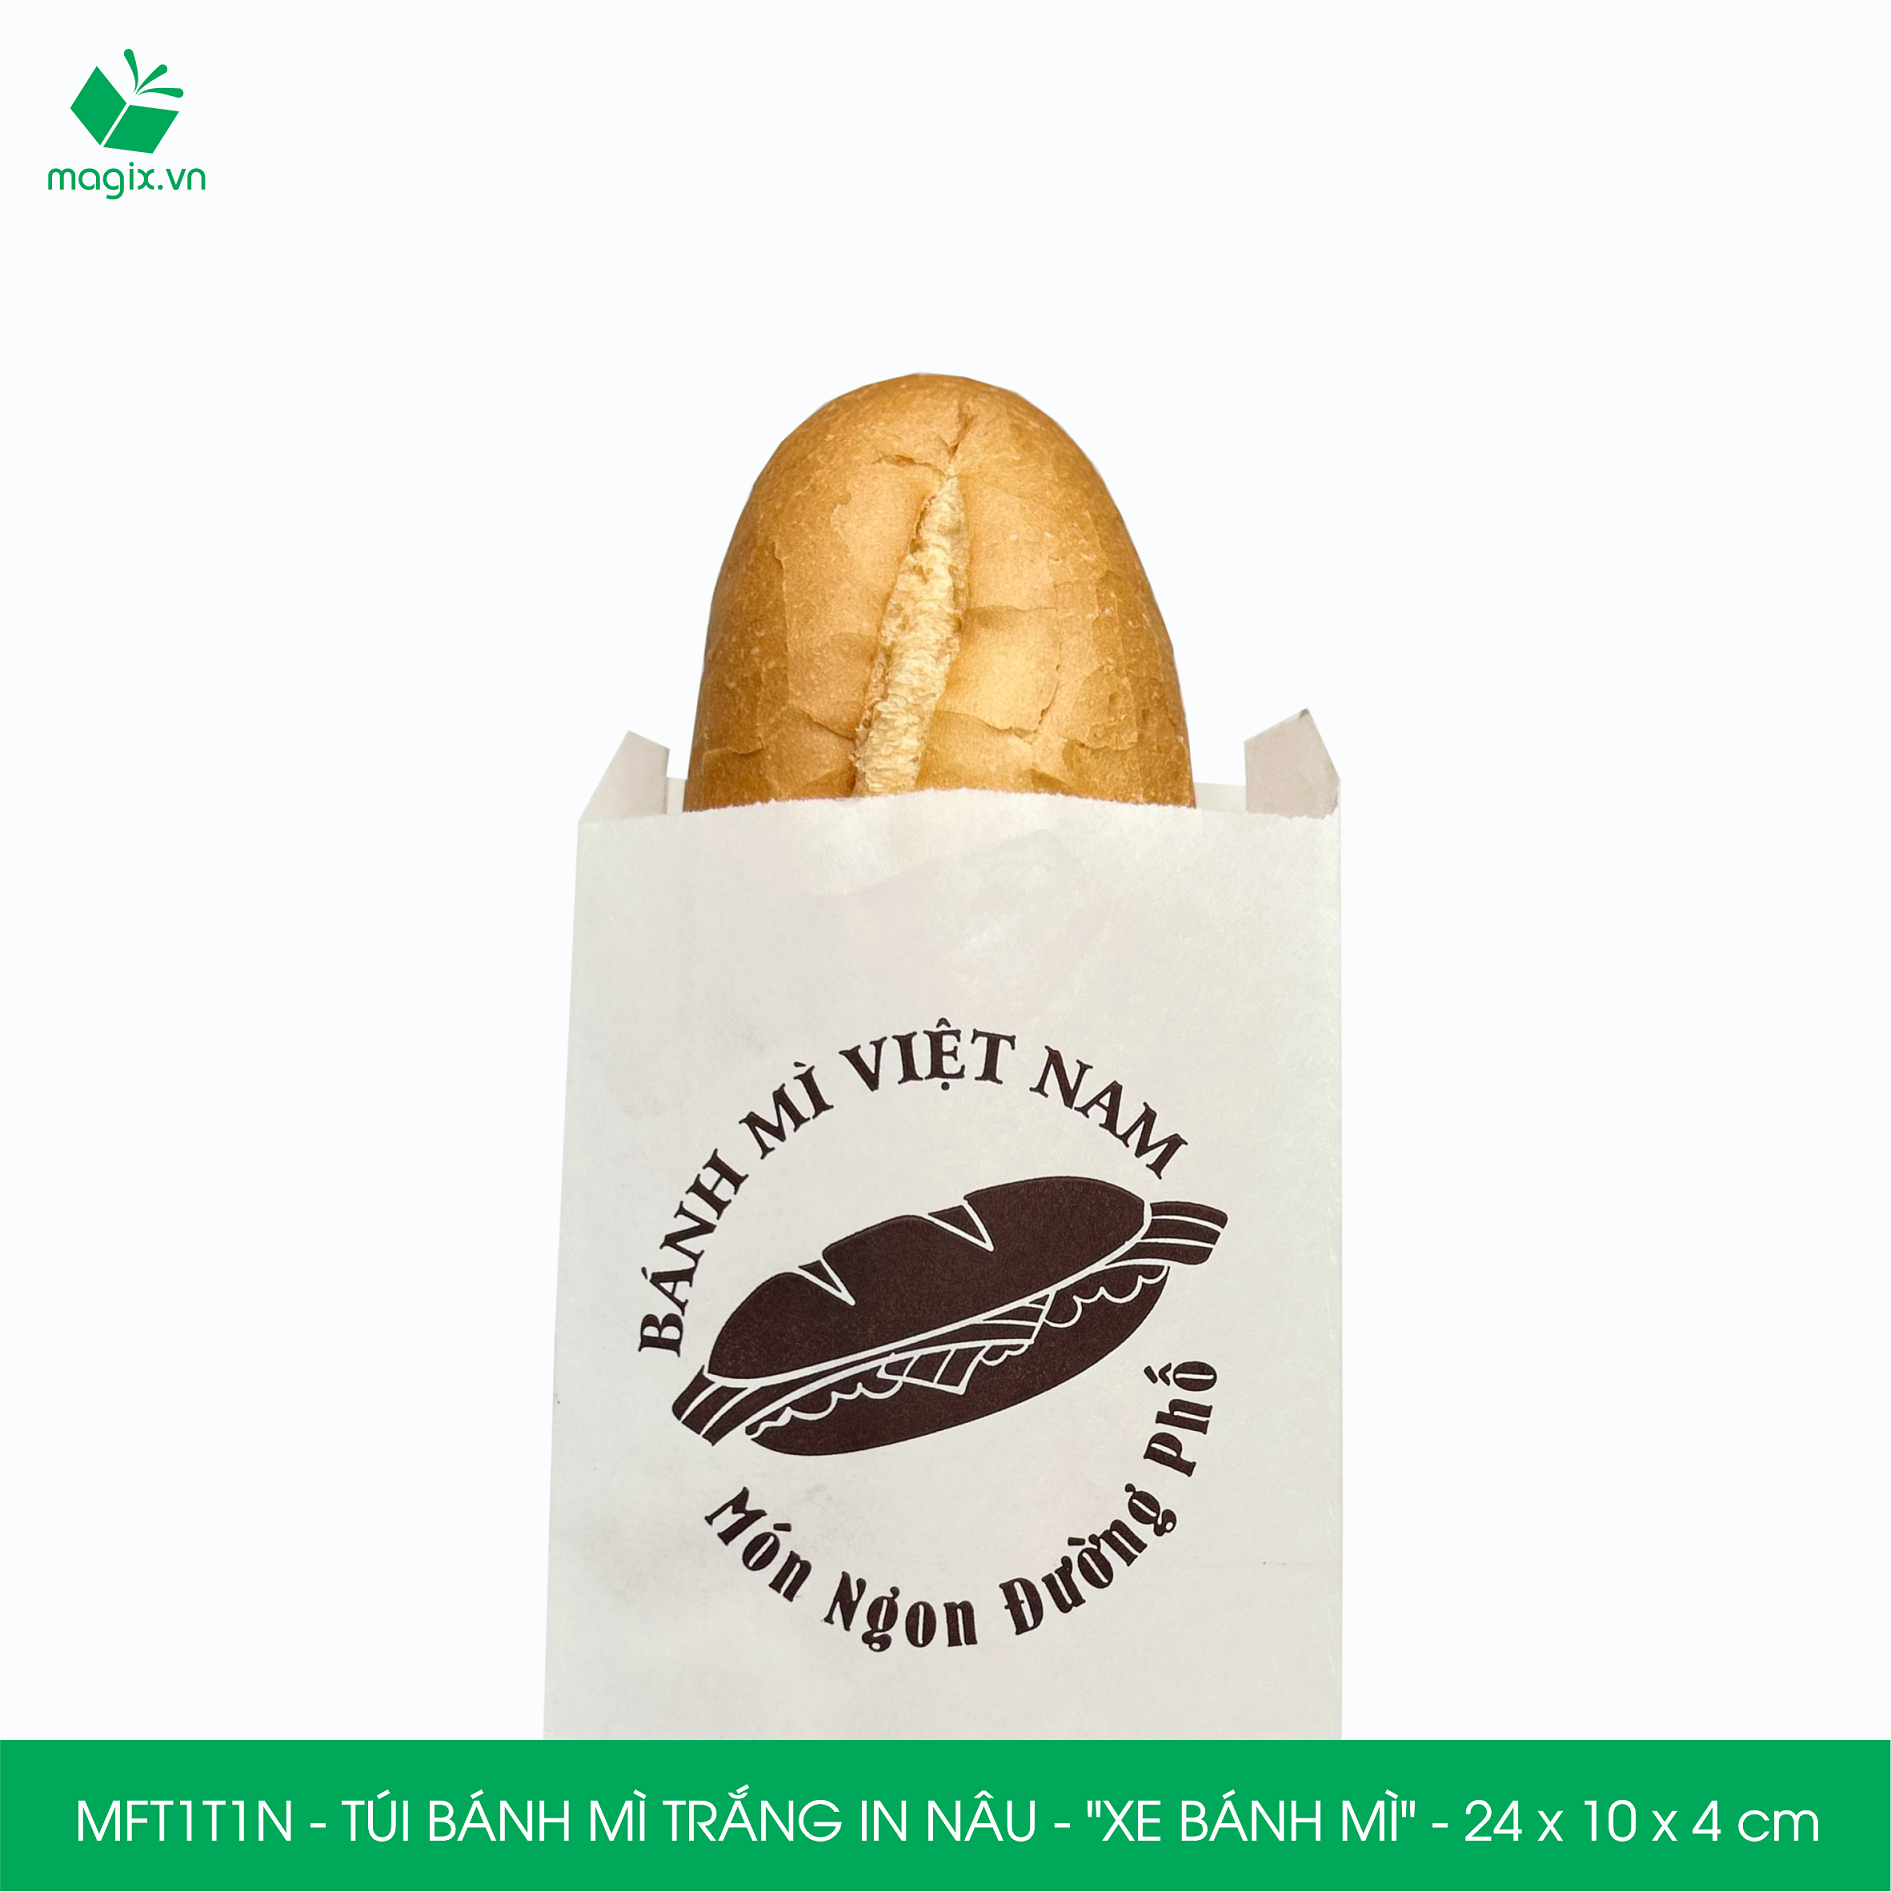 MFT1T1N - 24x10x4 cm - 100Túi bánh mì Trắng, in sẵn họa tiết XE BÁNH MÌ - Bao bánh mì Túi giấy thực phẩm an toàn